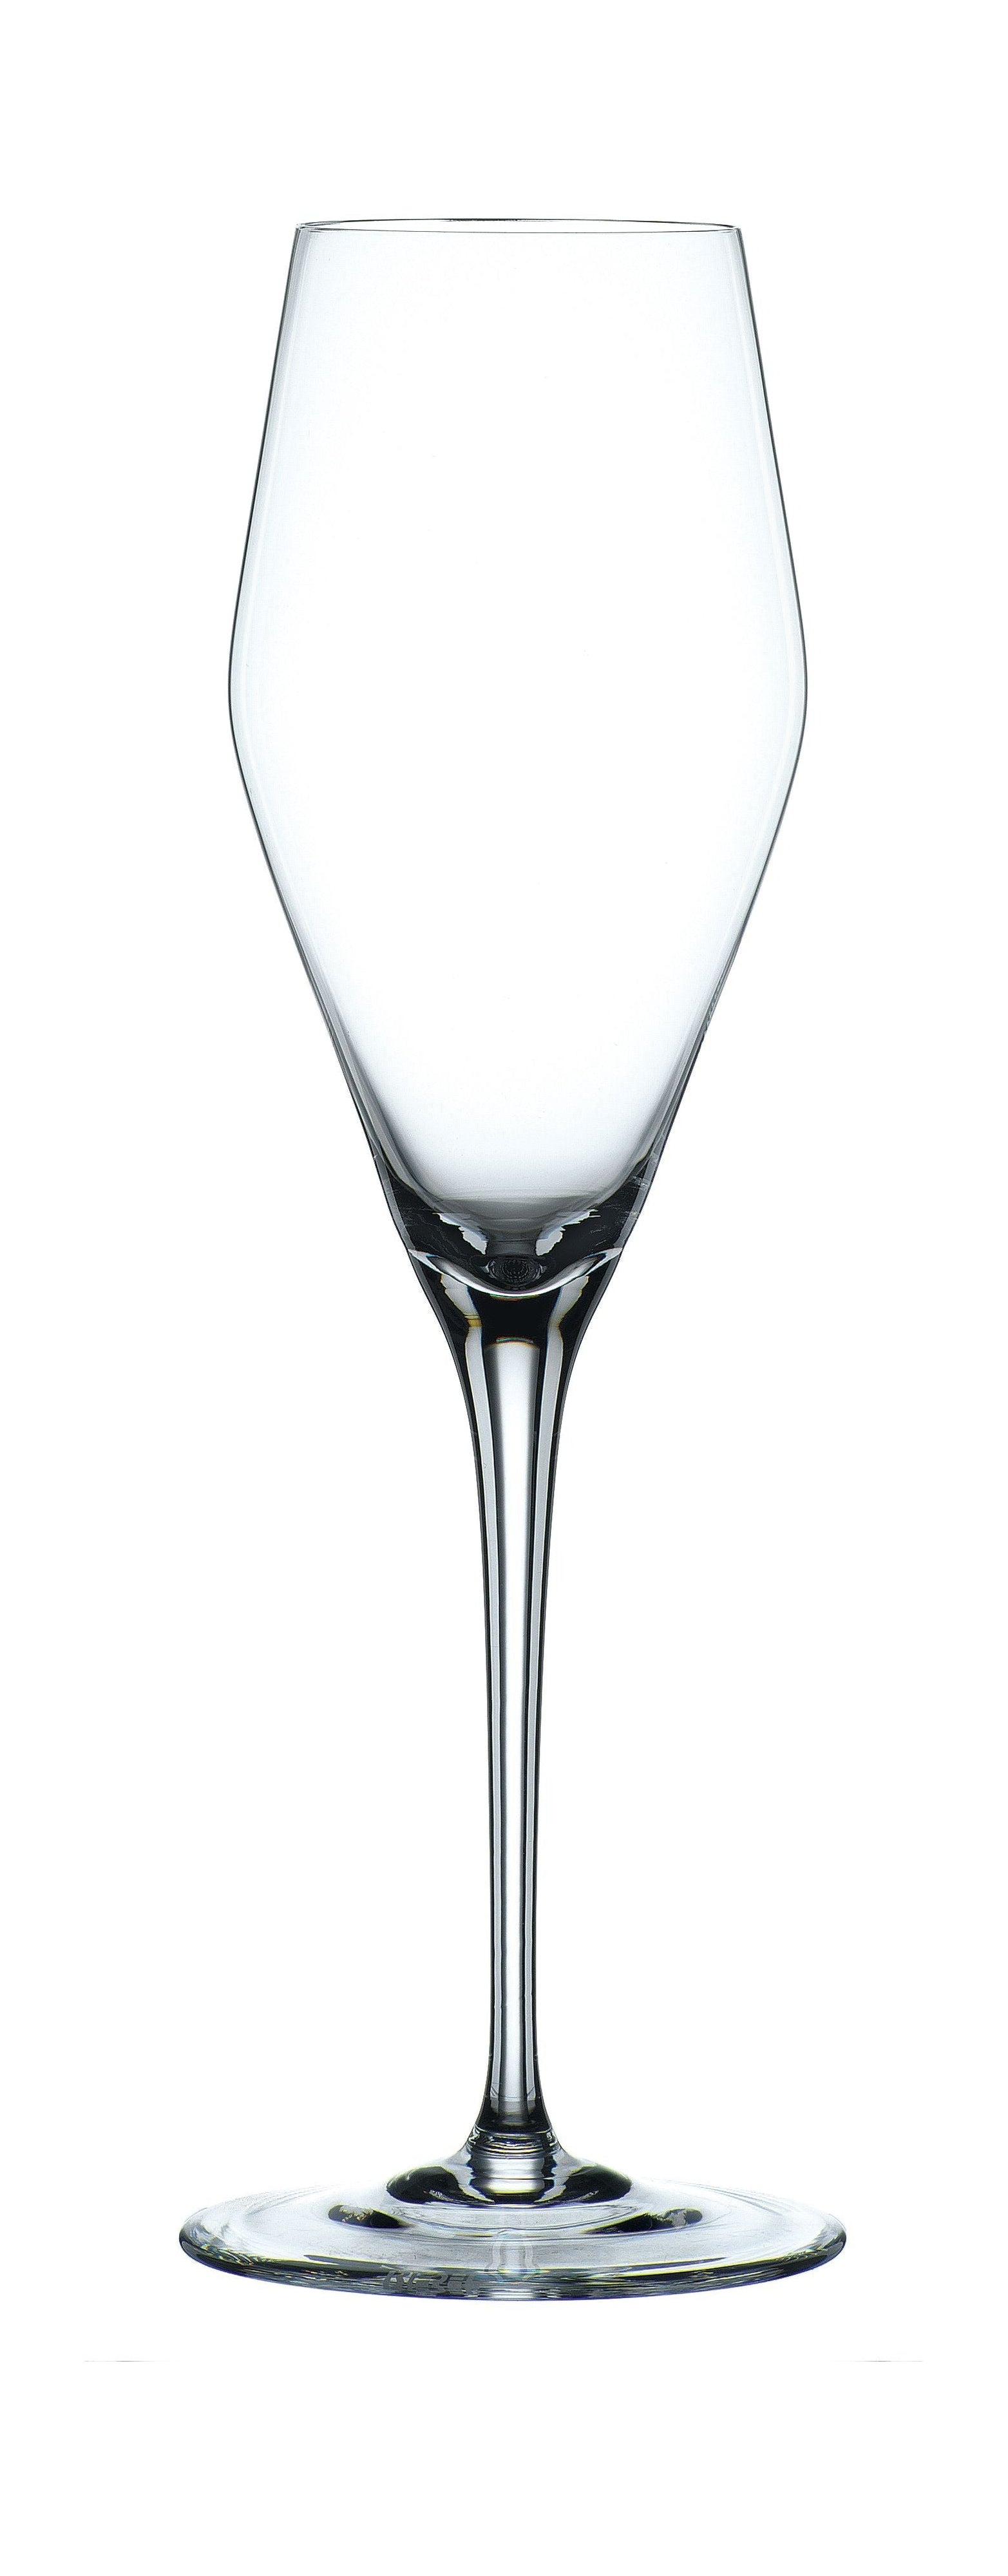 Nachtmann Vi nova champagne glas 280 ml, set van 4